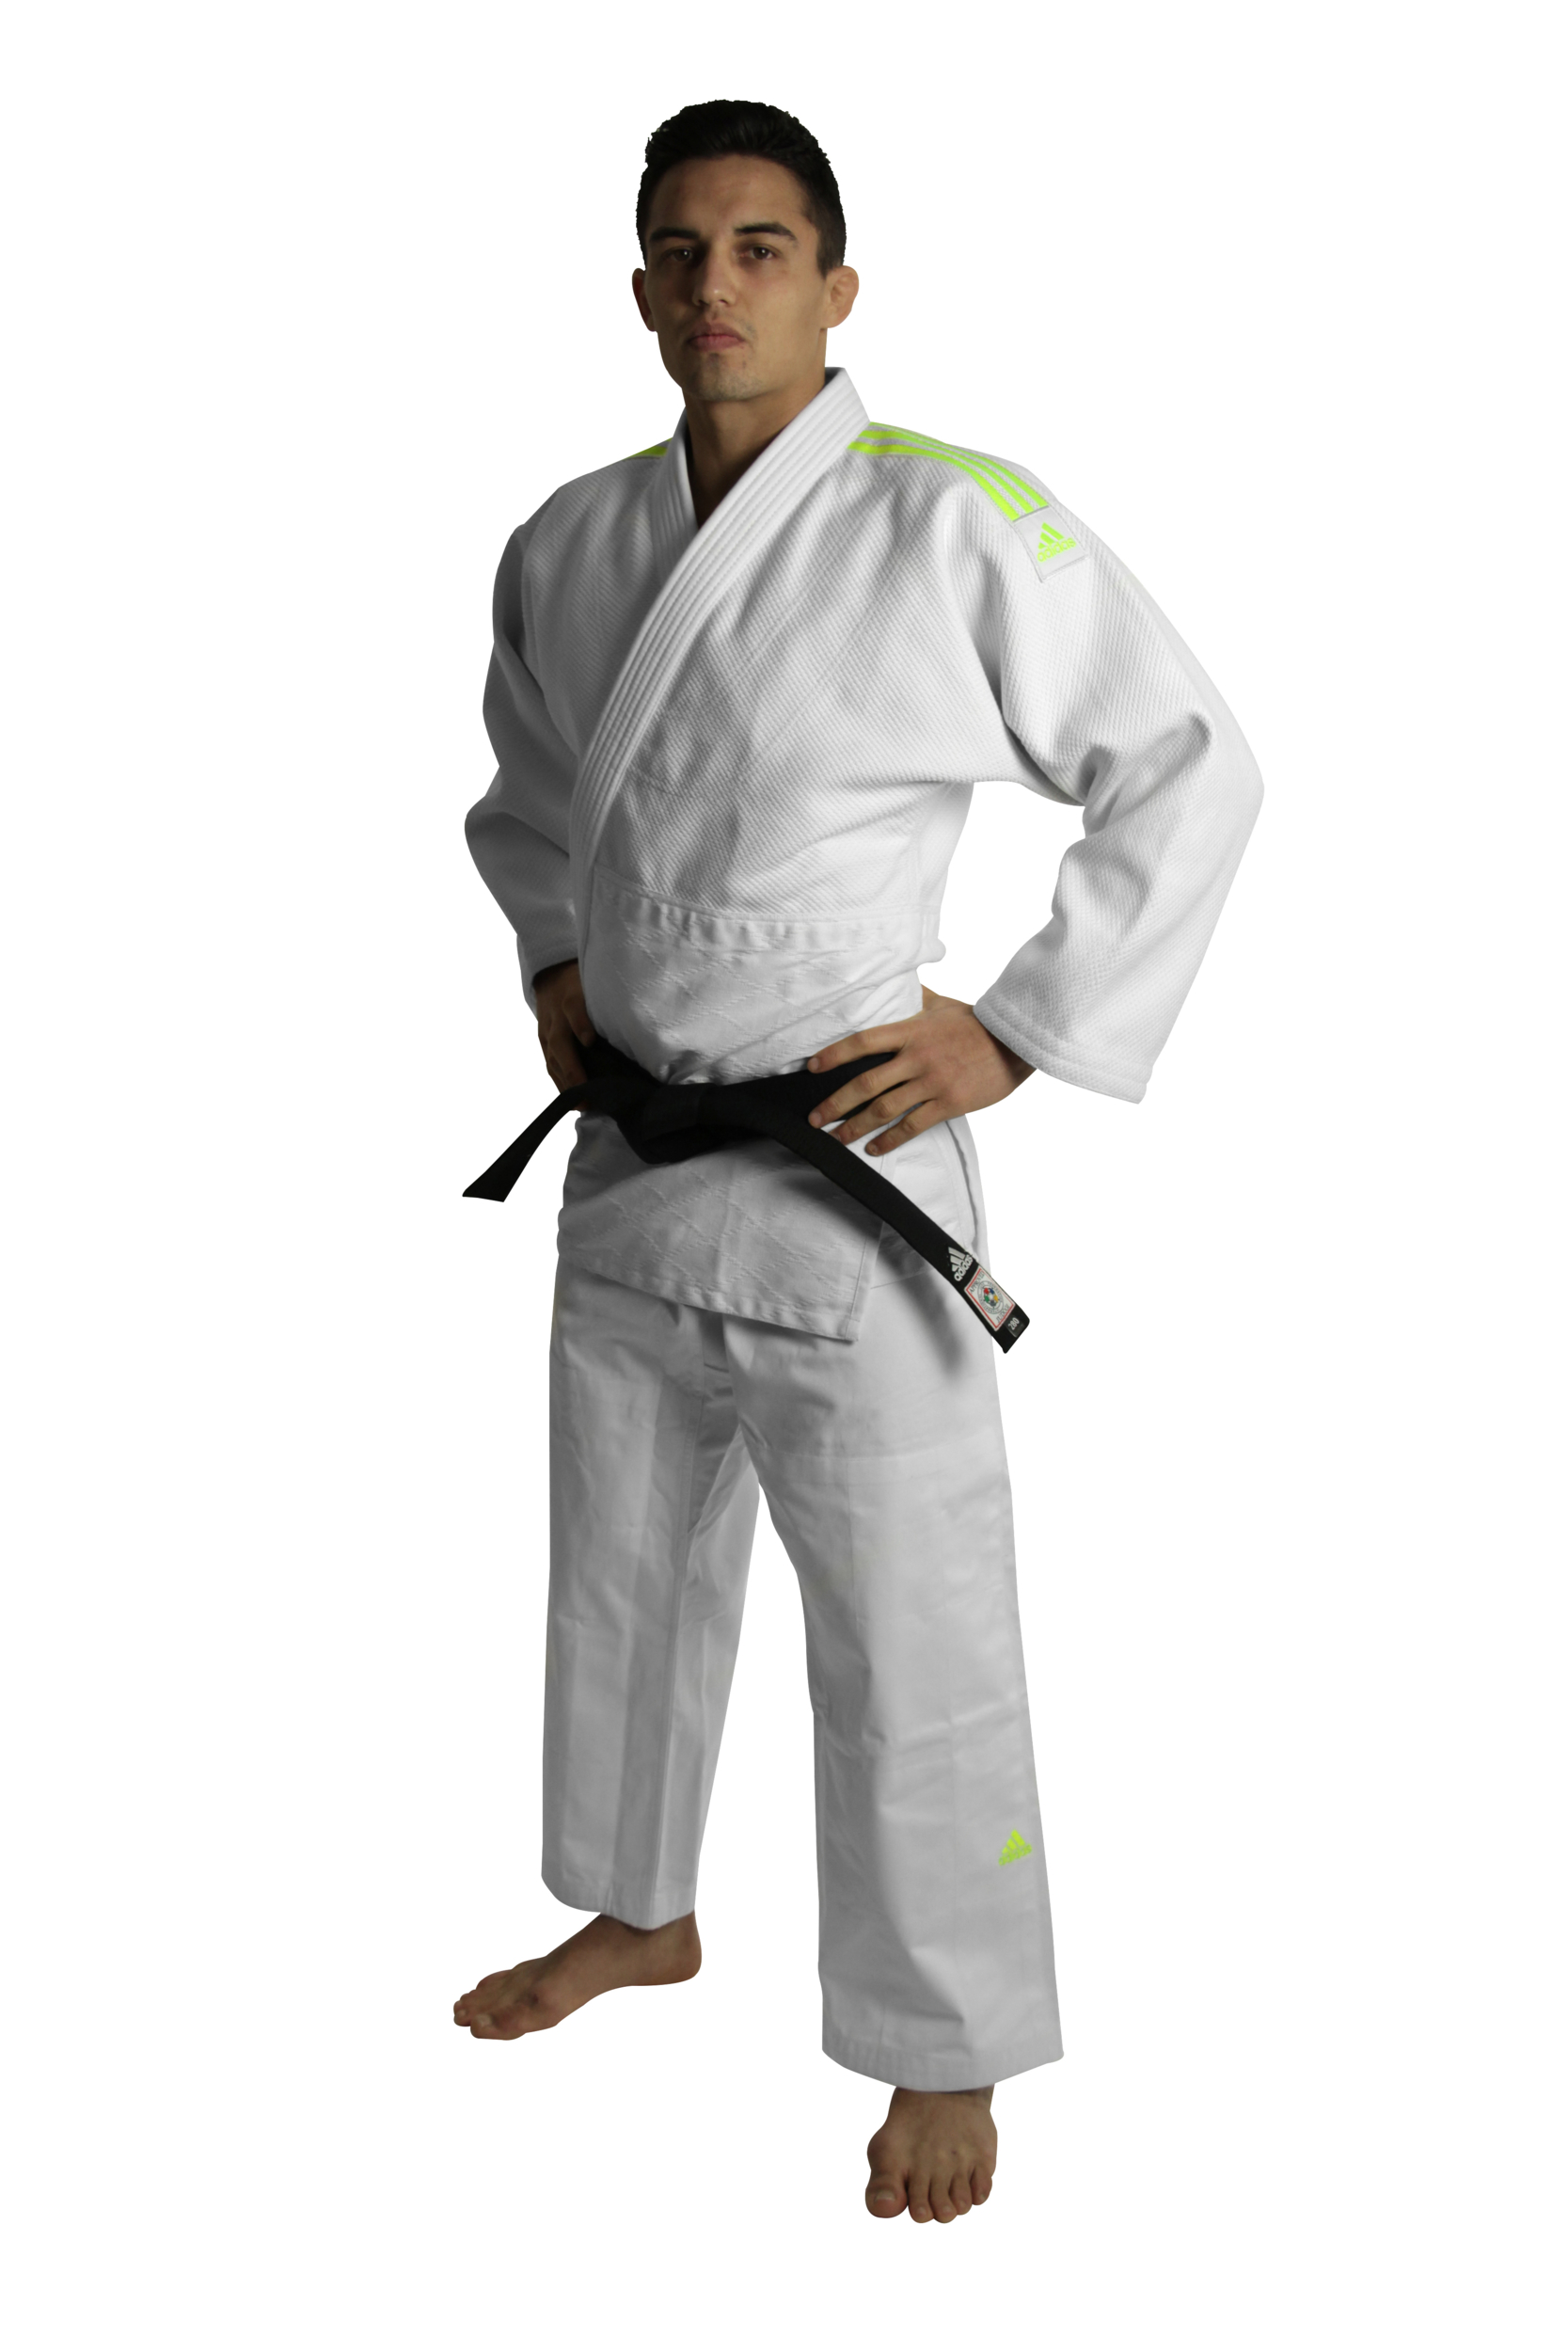 Kimono Judo Adidas J690 - Judo/Kimono lecoinduring